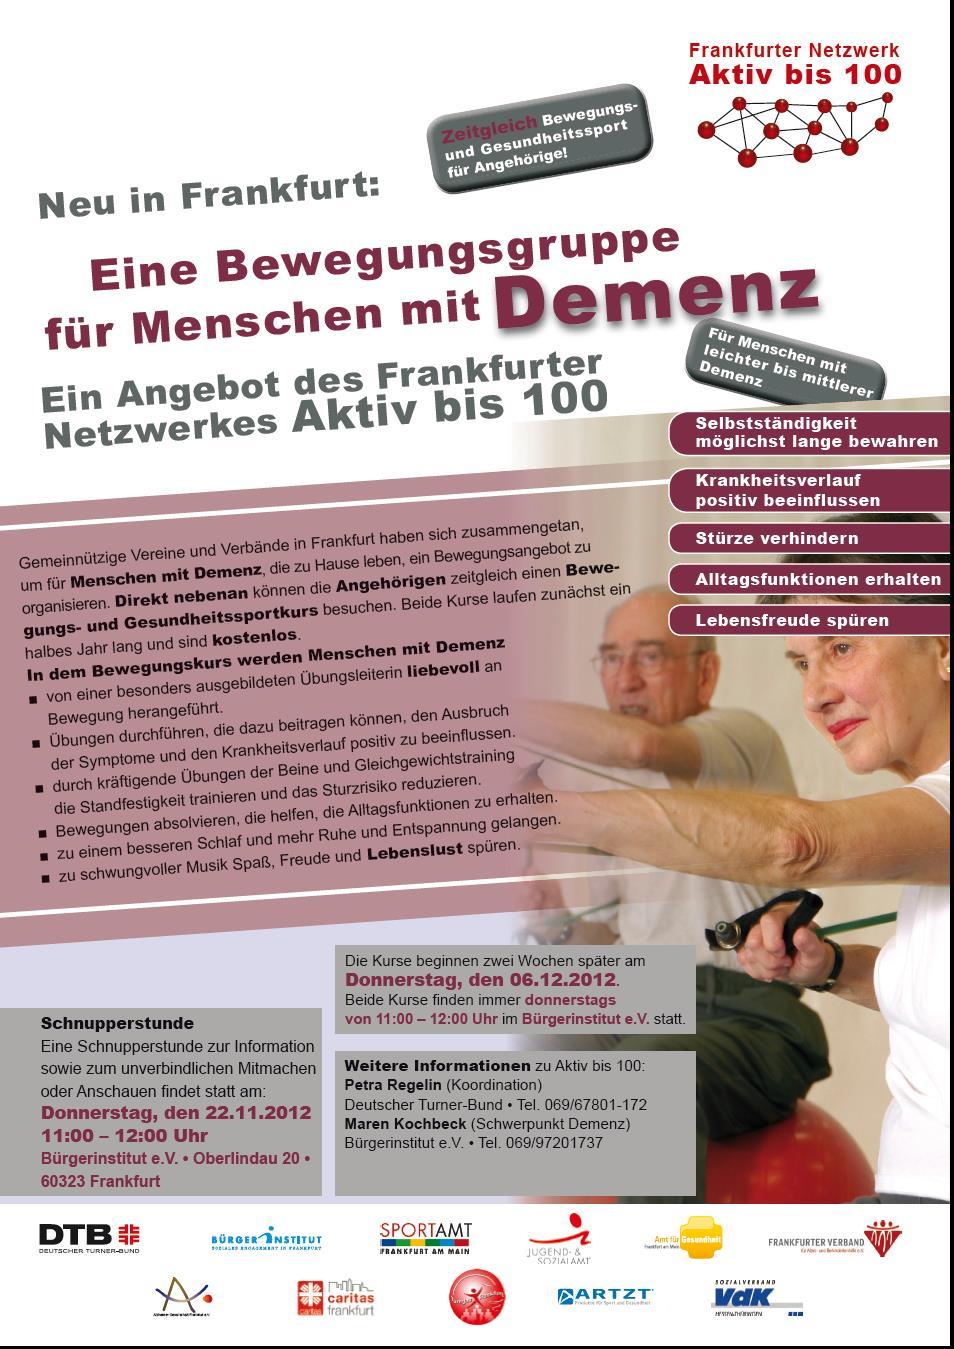 Frankfurter Netzwerk Aktiv bis 100 Ganz Aktuell bundesweit einmalig!